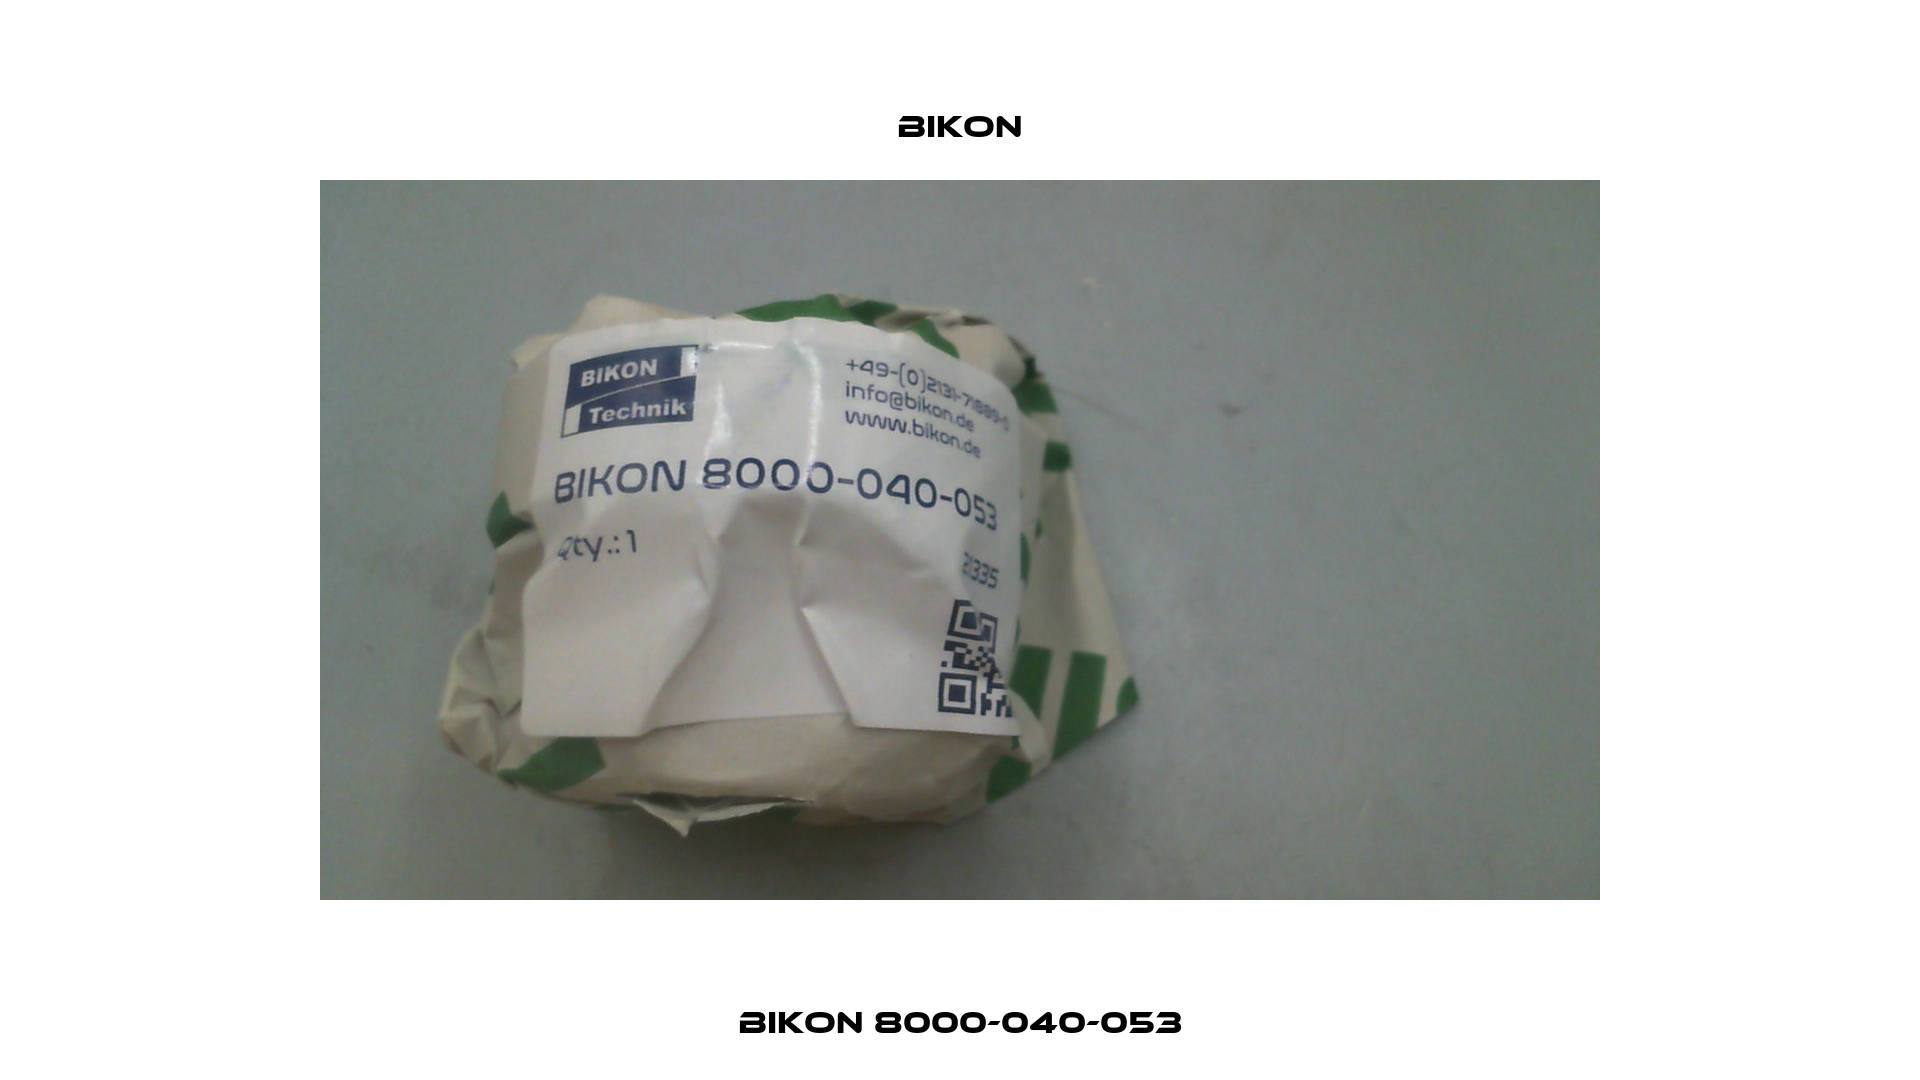 BIKON 8000-040-053 Bikon